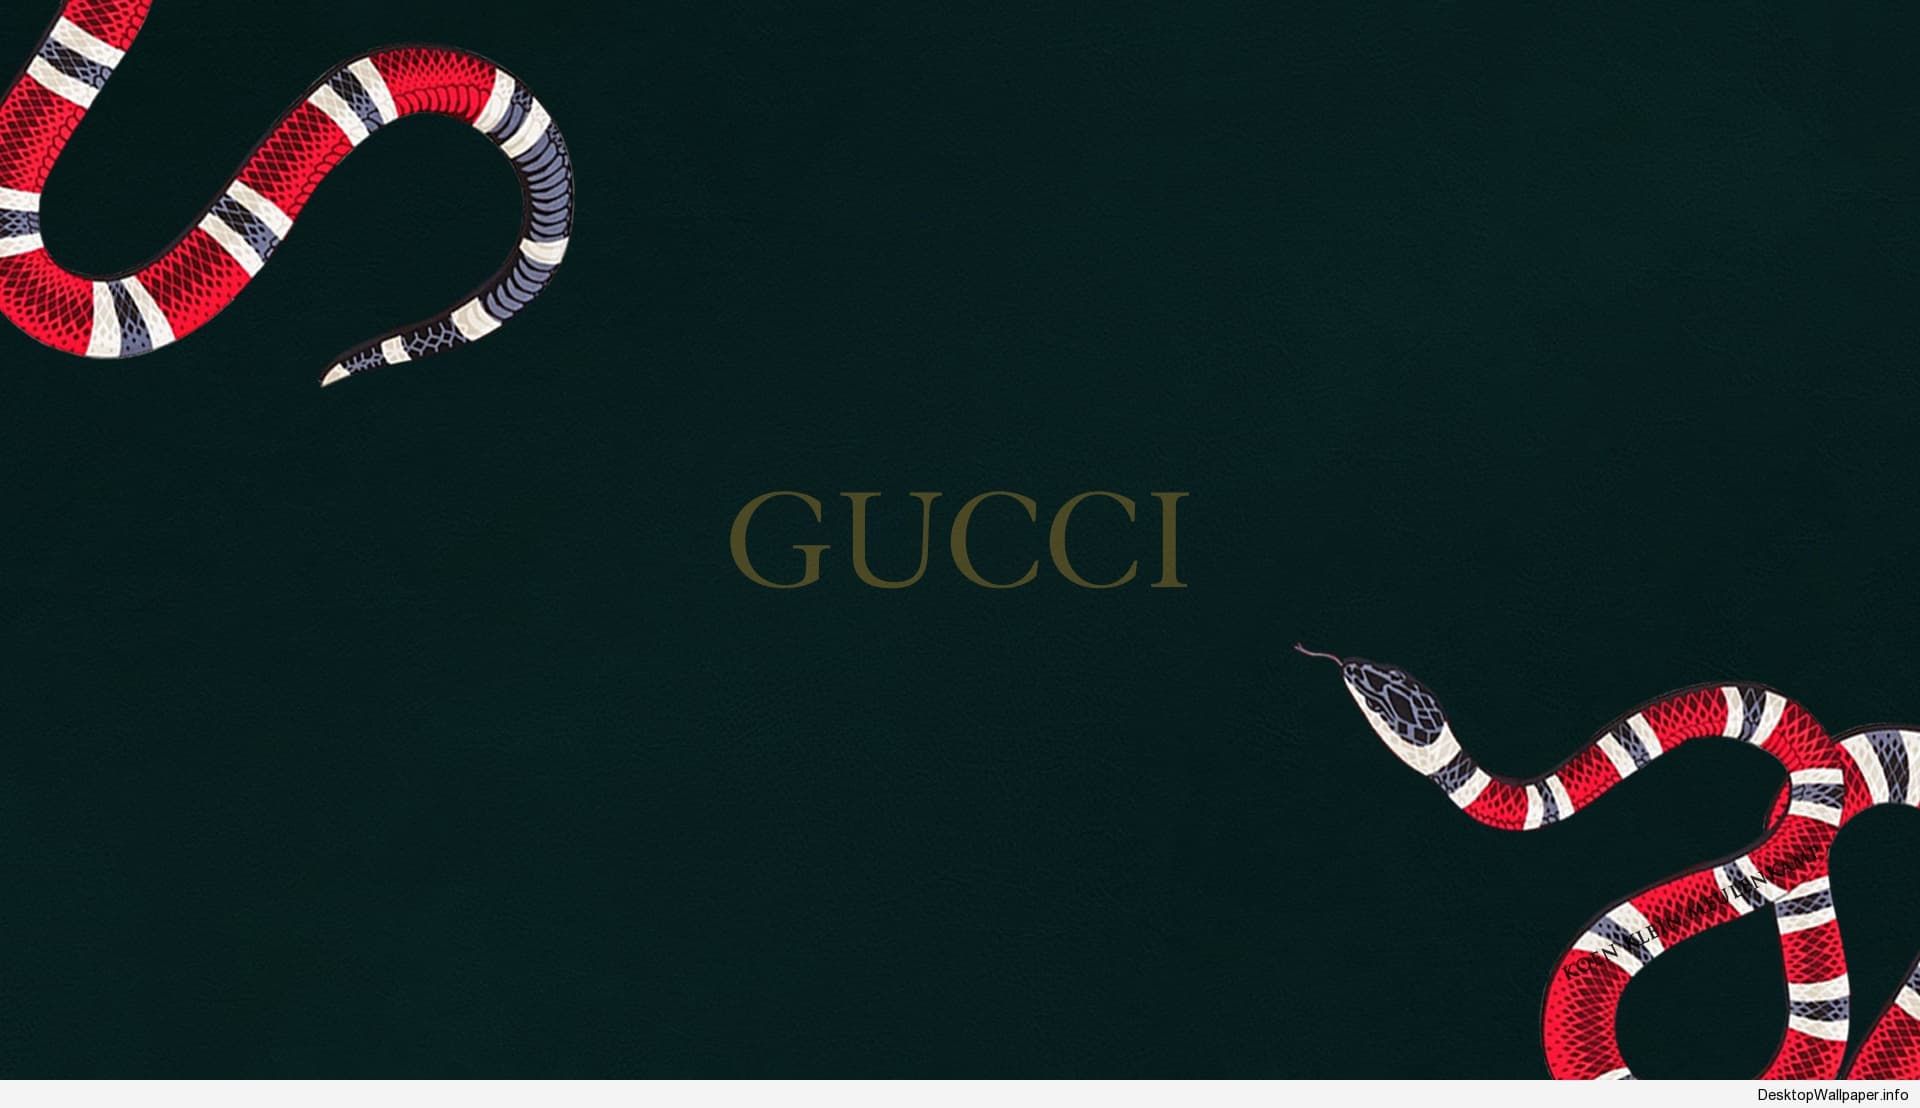 Gucci Wallpaper Iphone - Gucci Logo - HD Wallpaper 